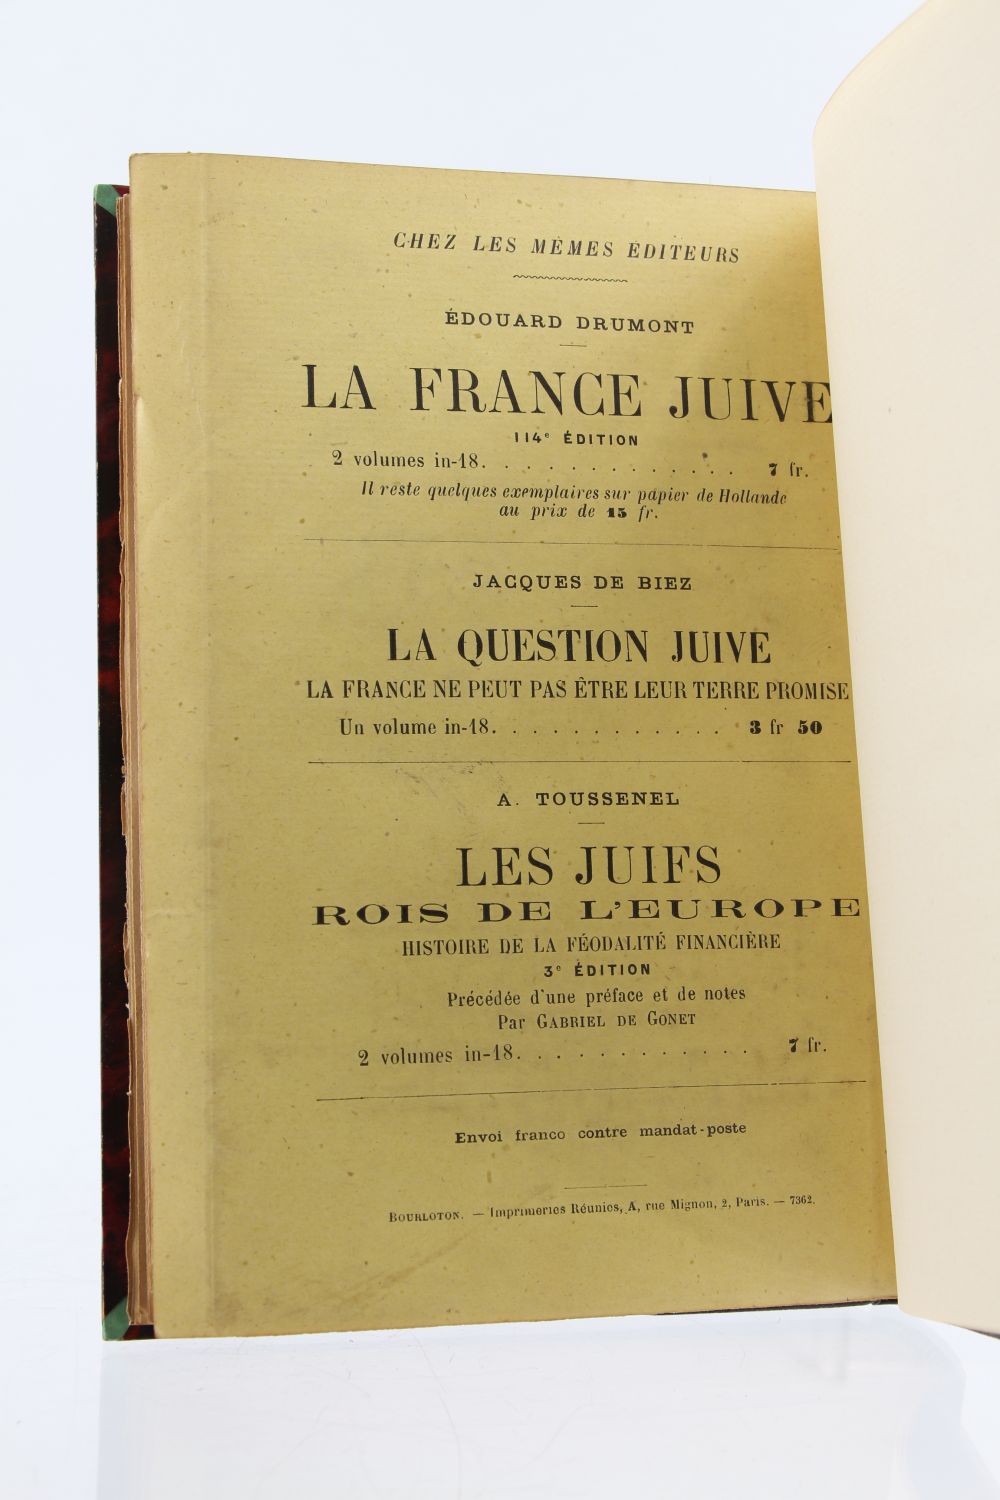 La France juive devant l'opinion - Edouard Drumont - Librairie française